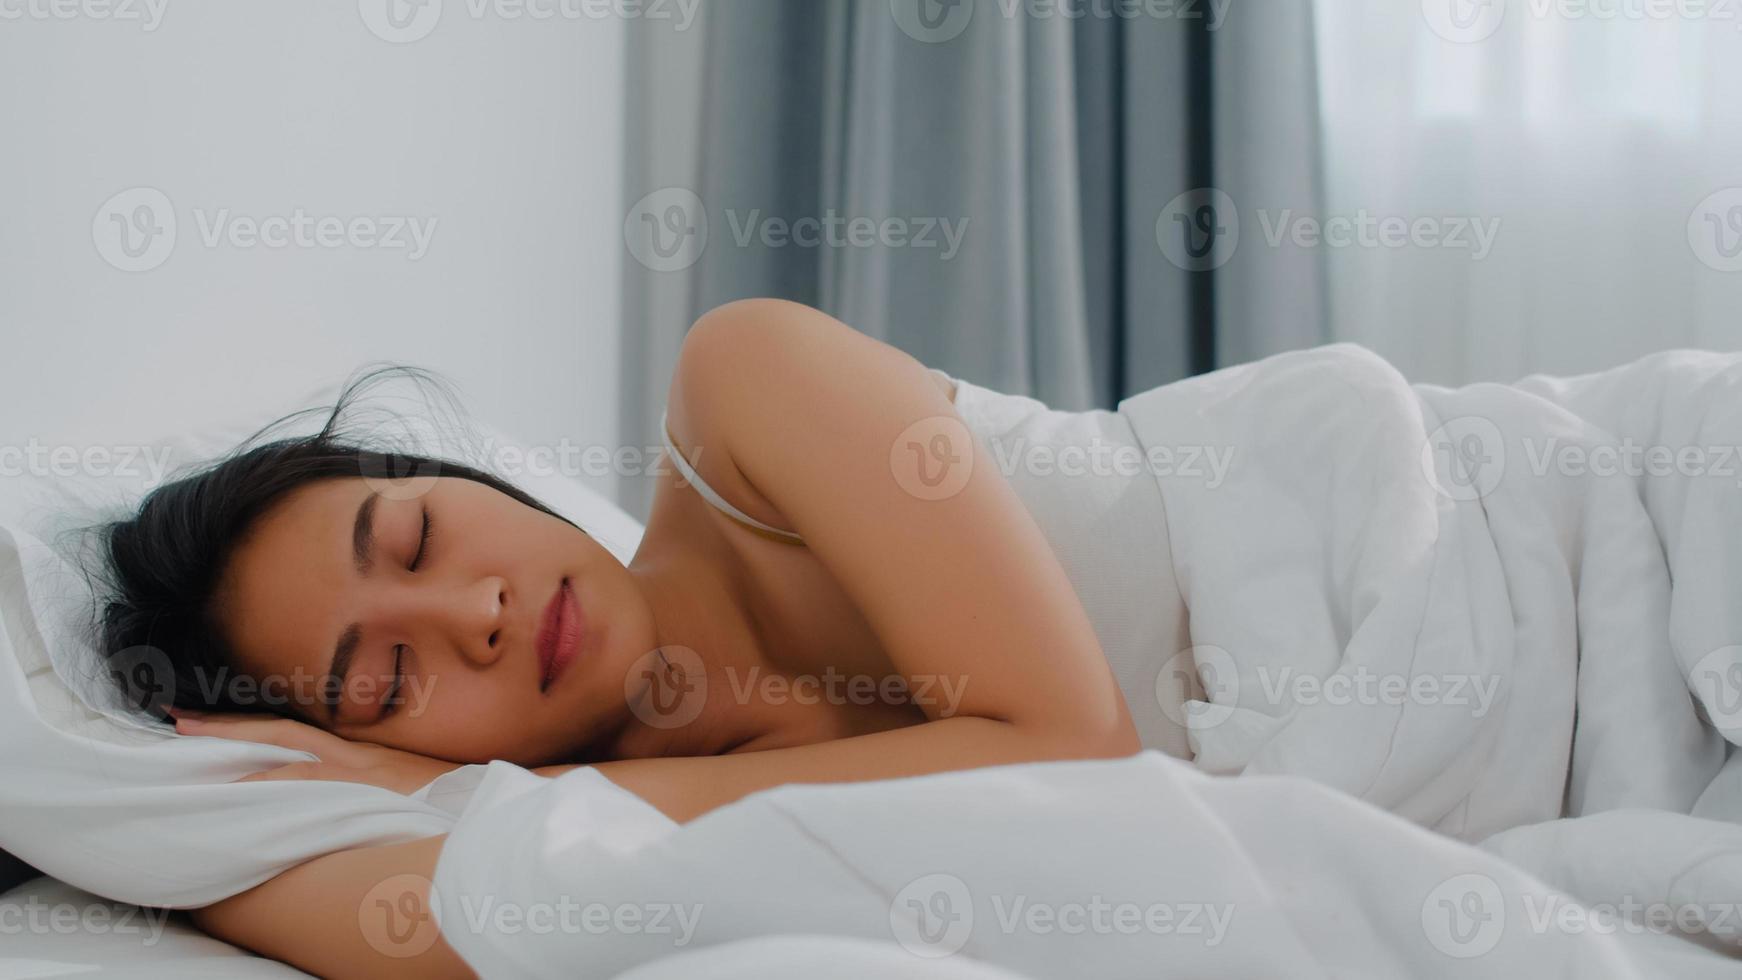 dama india asiática duerme en la habitación en casa. joven asiática que se siente feliz, relájese, descanse acostada en la cama, se sienta cómoda y tranquila en el dormitorio de la casa por la mañana. foto